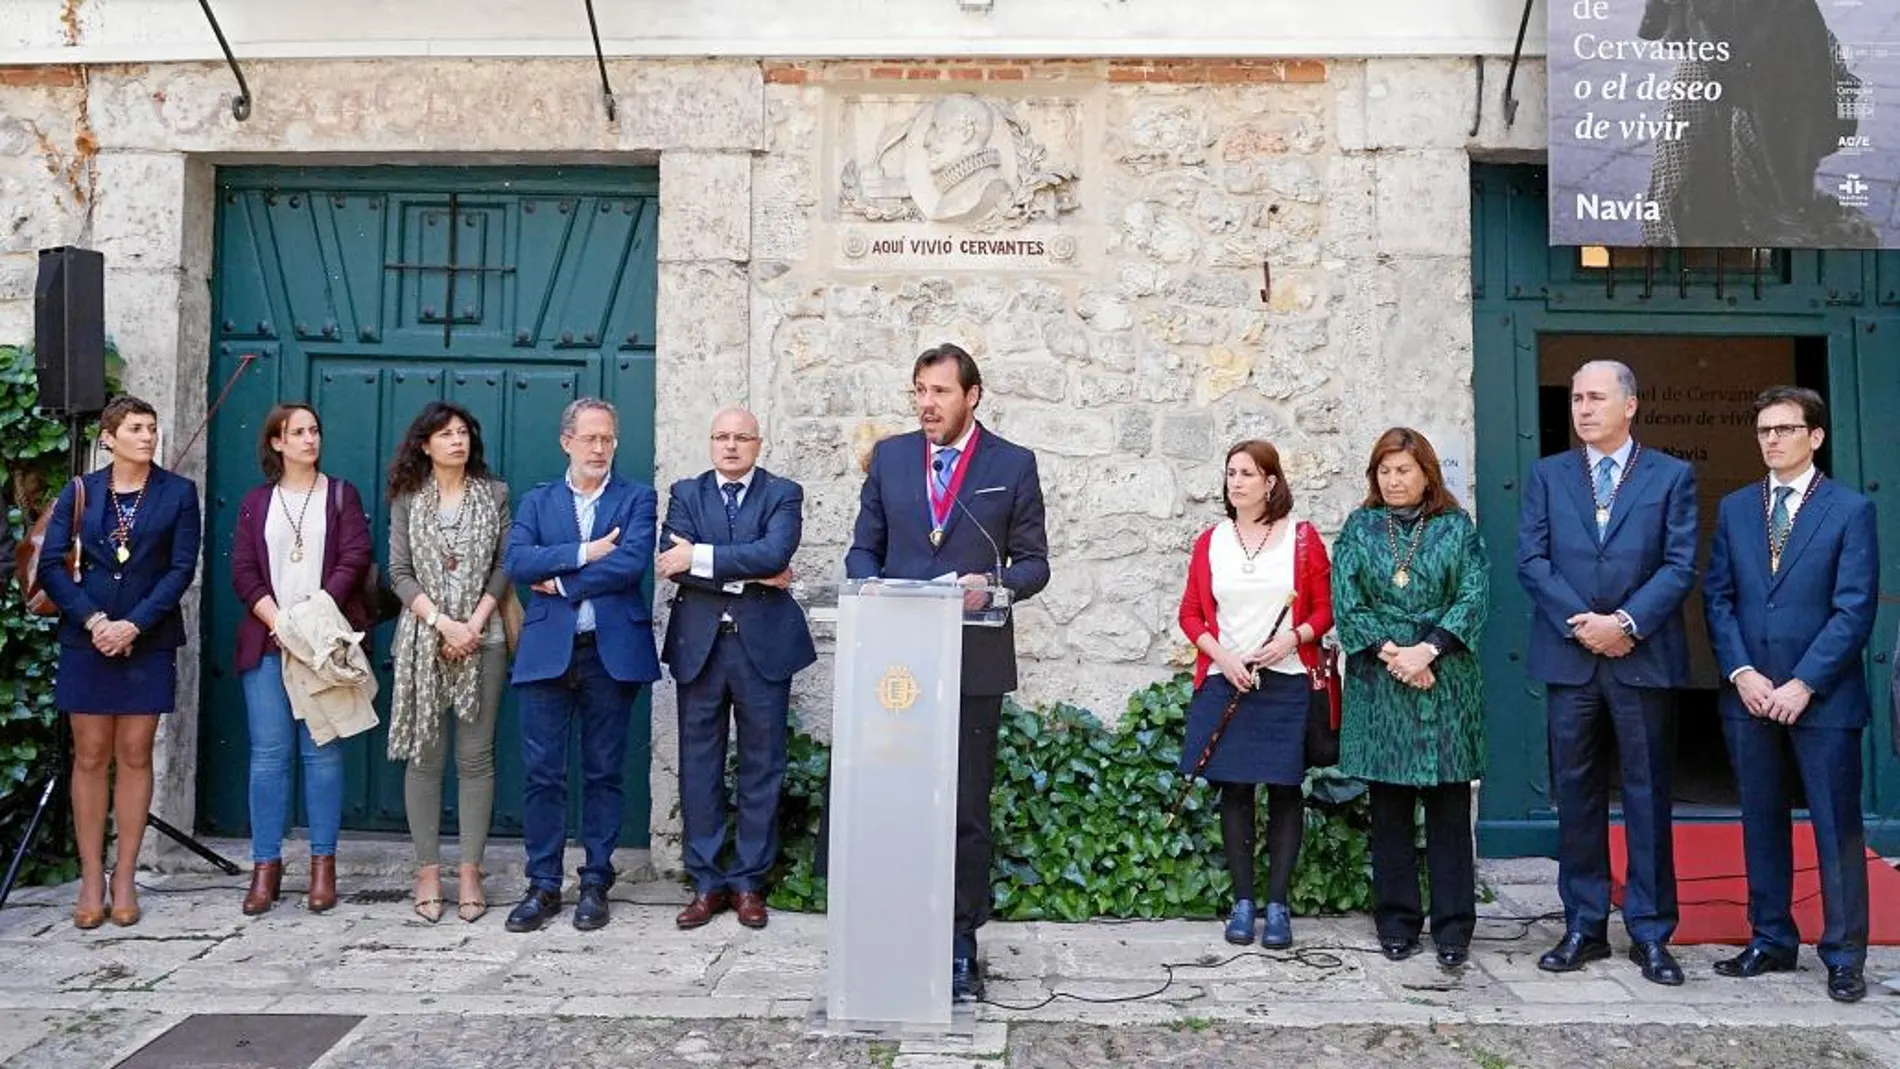 El alcalde Óscar Puente interviene en el Museo Casa de Cervantes, Valladolid junto a los miembros del Ayuntamiento